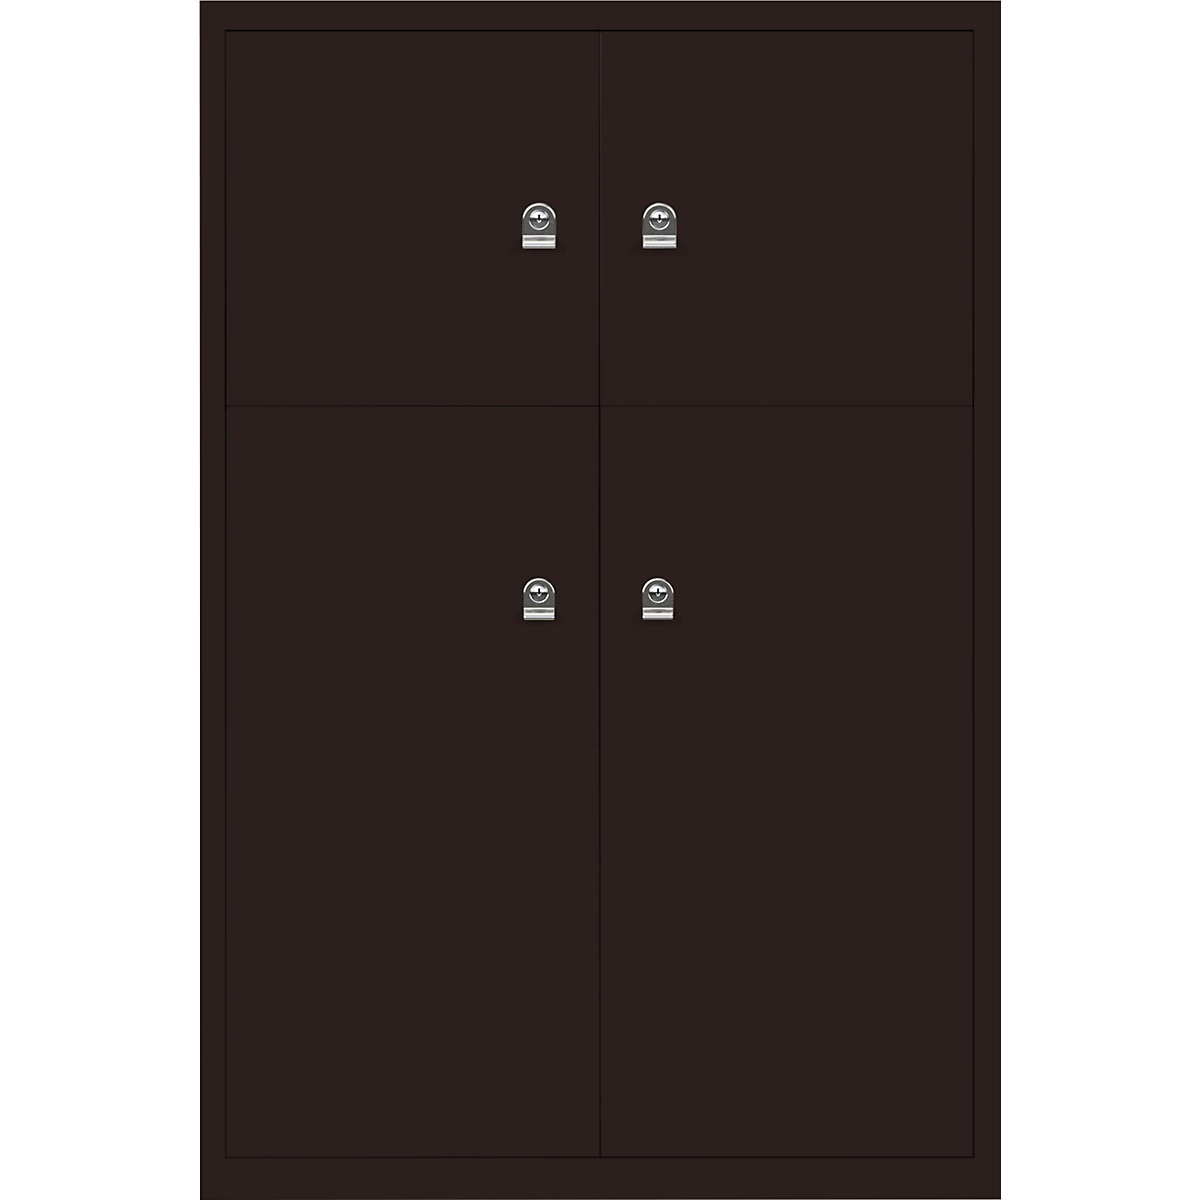 LateralFile™ Lodge – BISLEY, met 4 lockers, hoogte 2 x 375 mm, 2 x 755 mm, sepiabruin-5